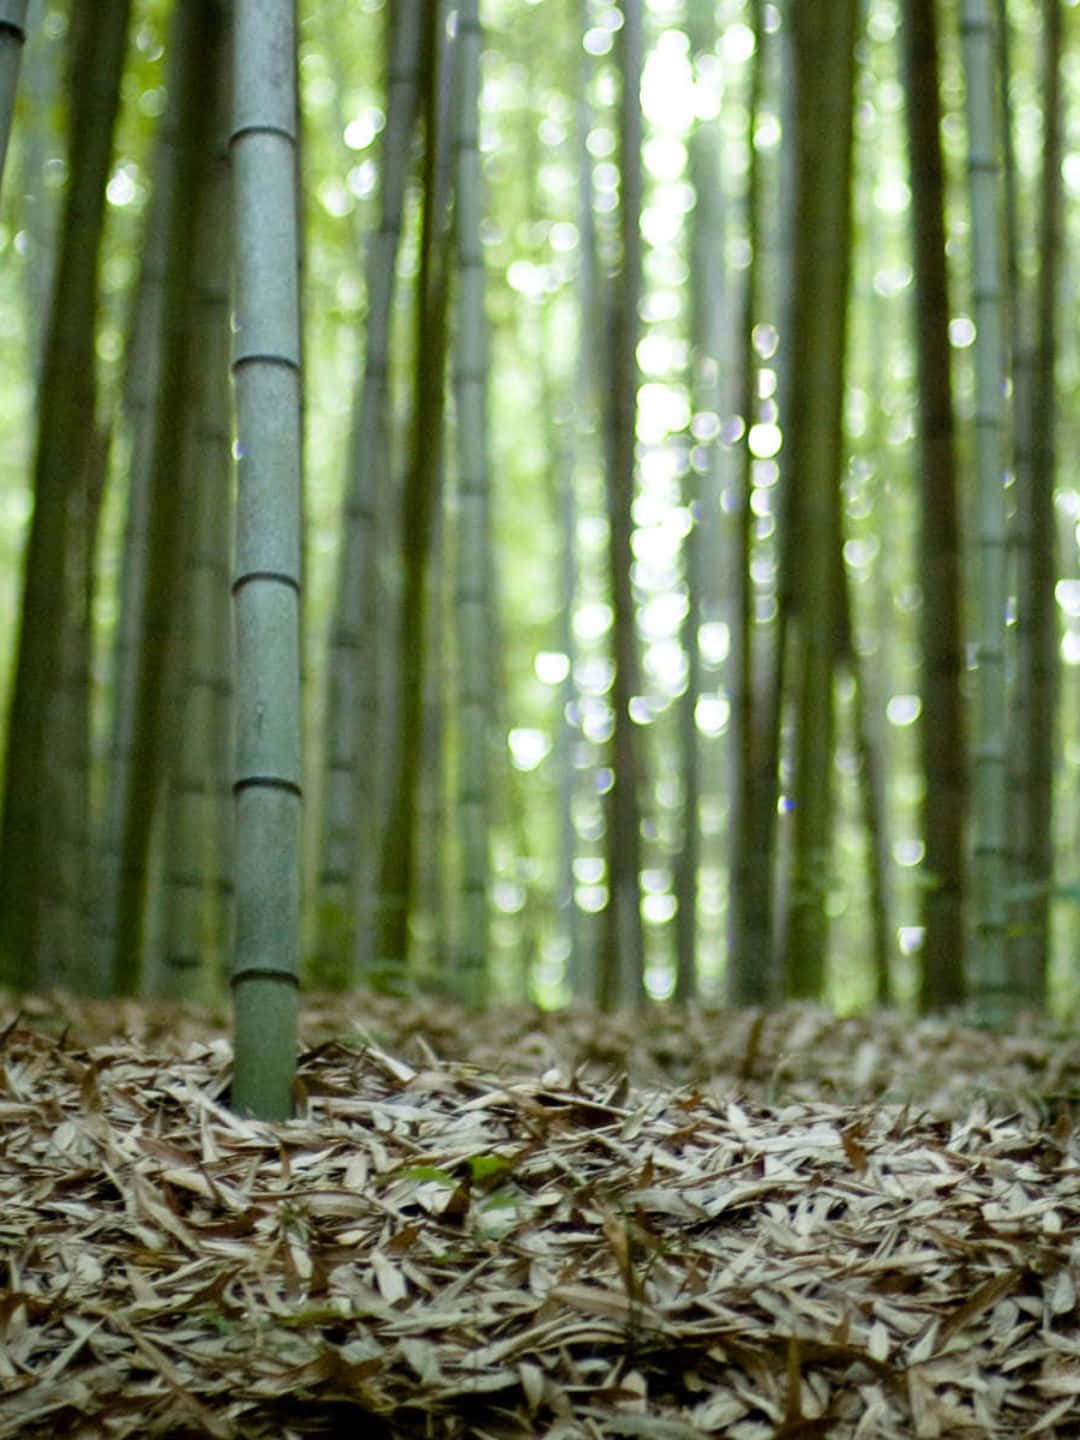 Sfondodi Bambù A 1440p, Foglie Secche Sul Terreno.